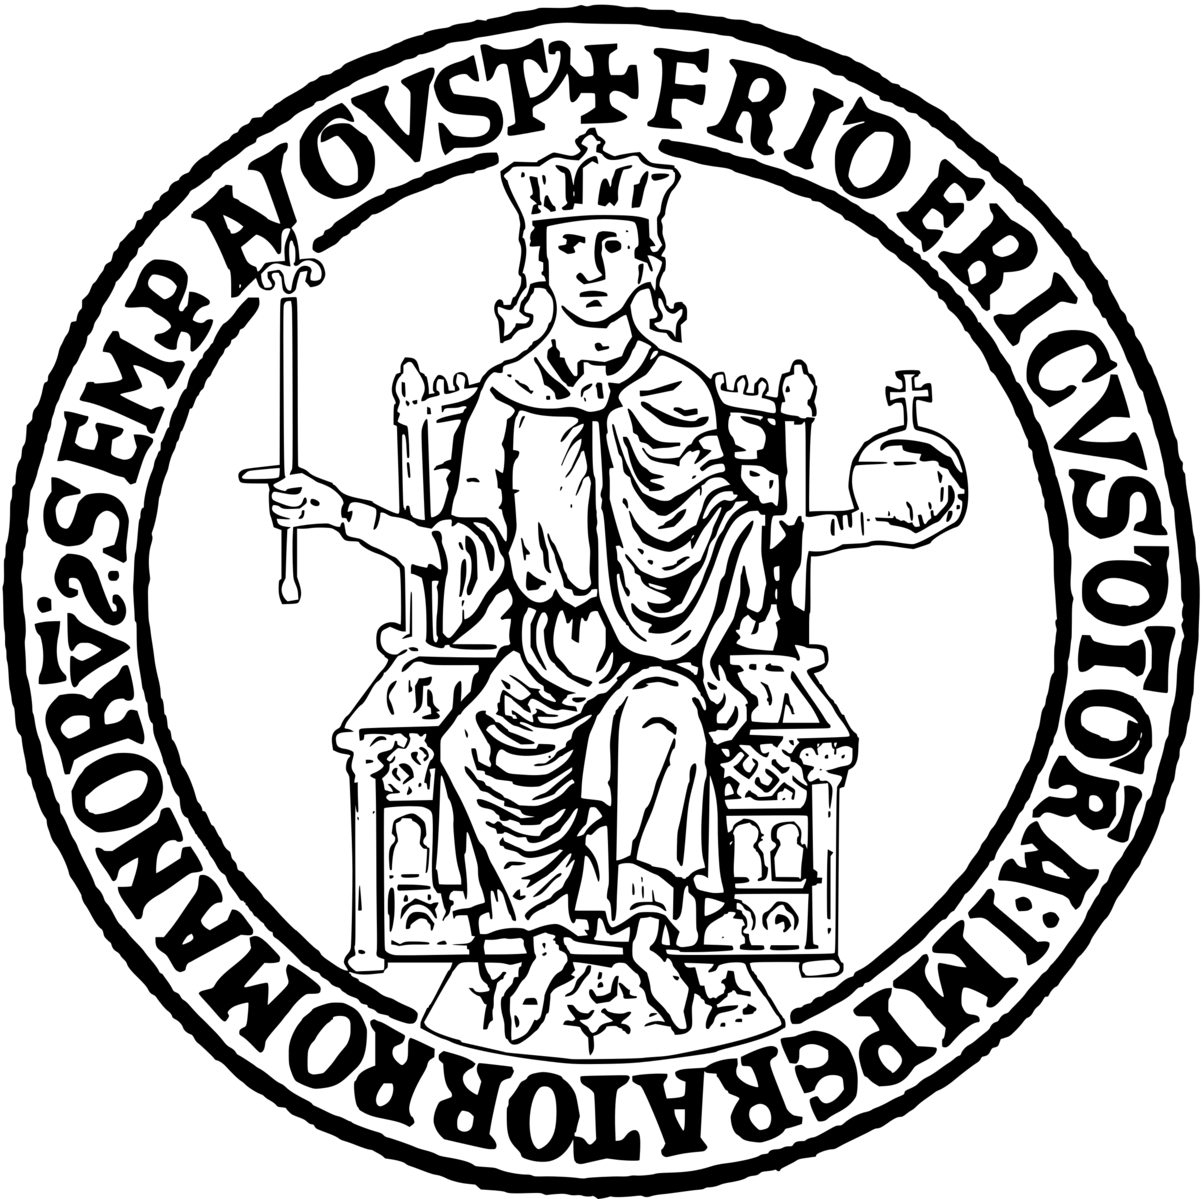 unifed2 logo